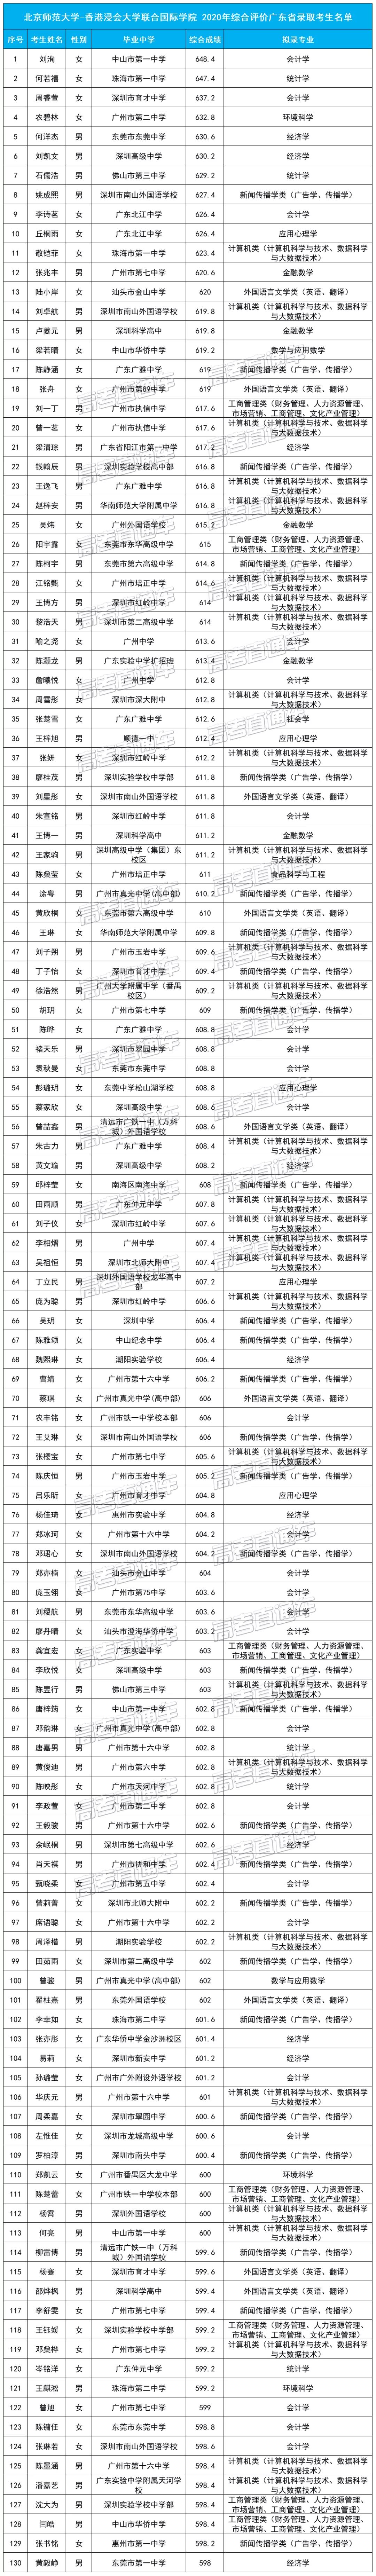 北京师范大学、香港浸会大学 联合国际学院2020年综合评价广东省录取考生名单